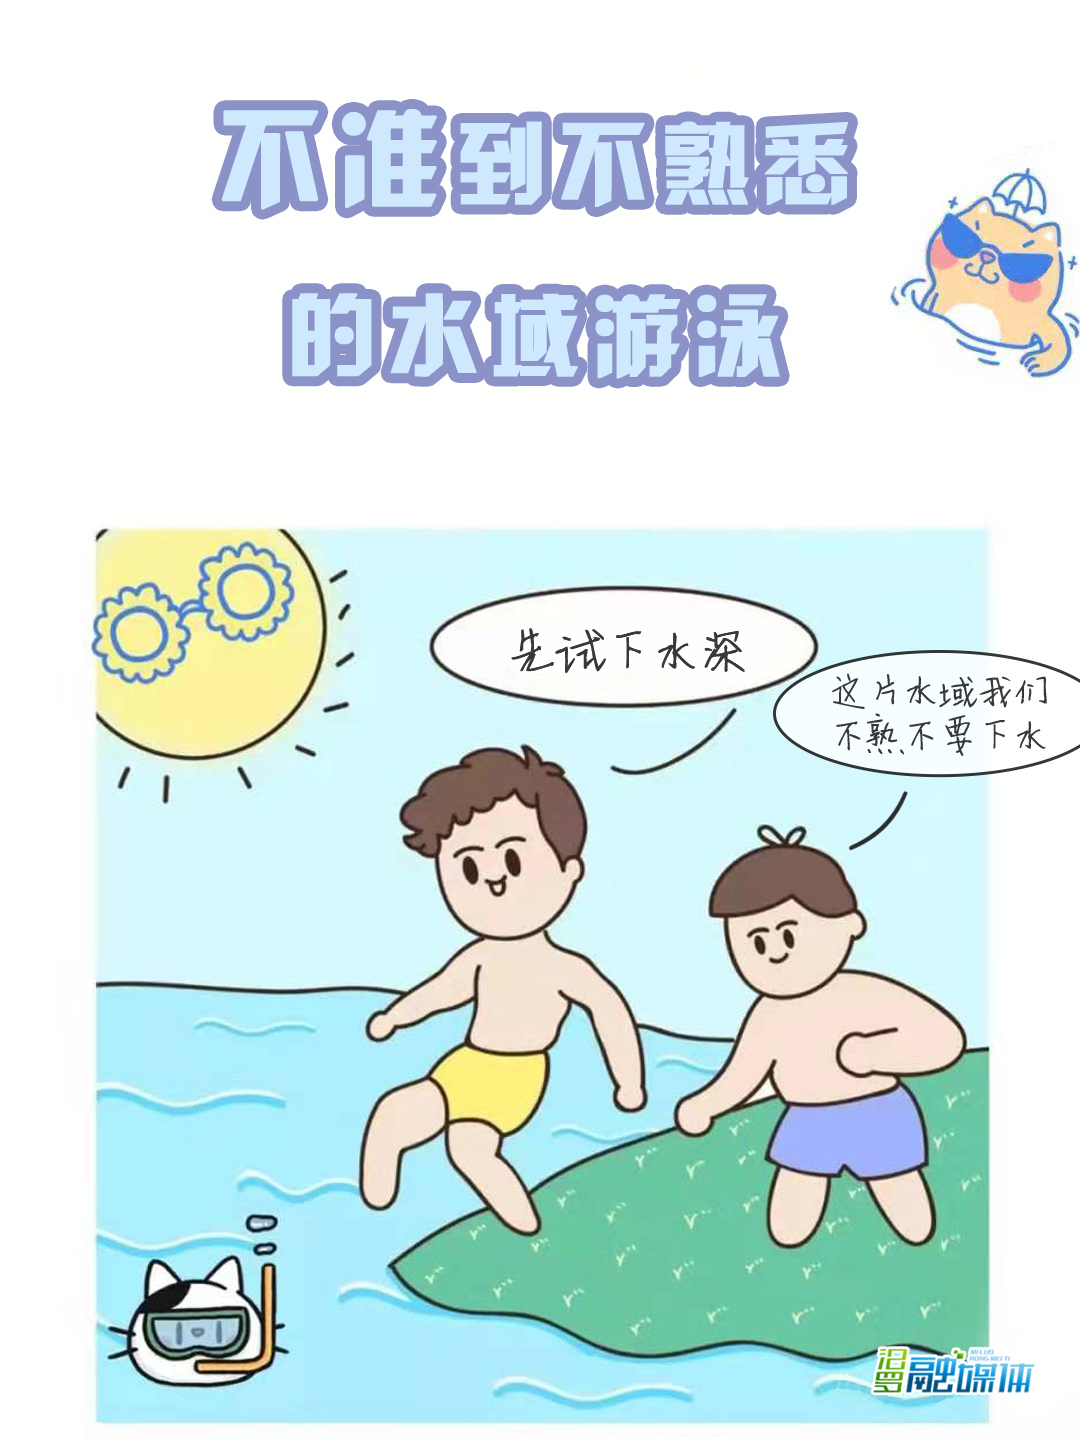 【防溺水安全教育】一组动图带你了解防溺水安全知识-中国博士县—玉山之窗